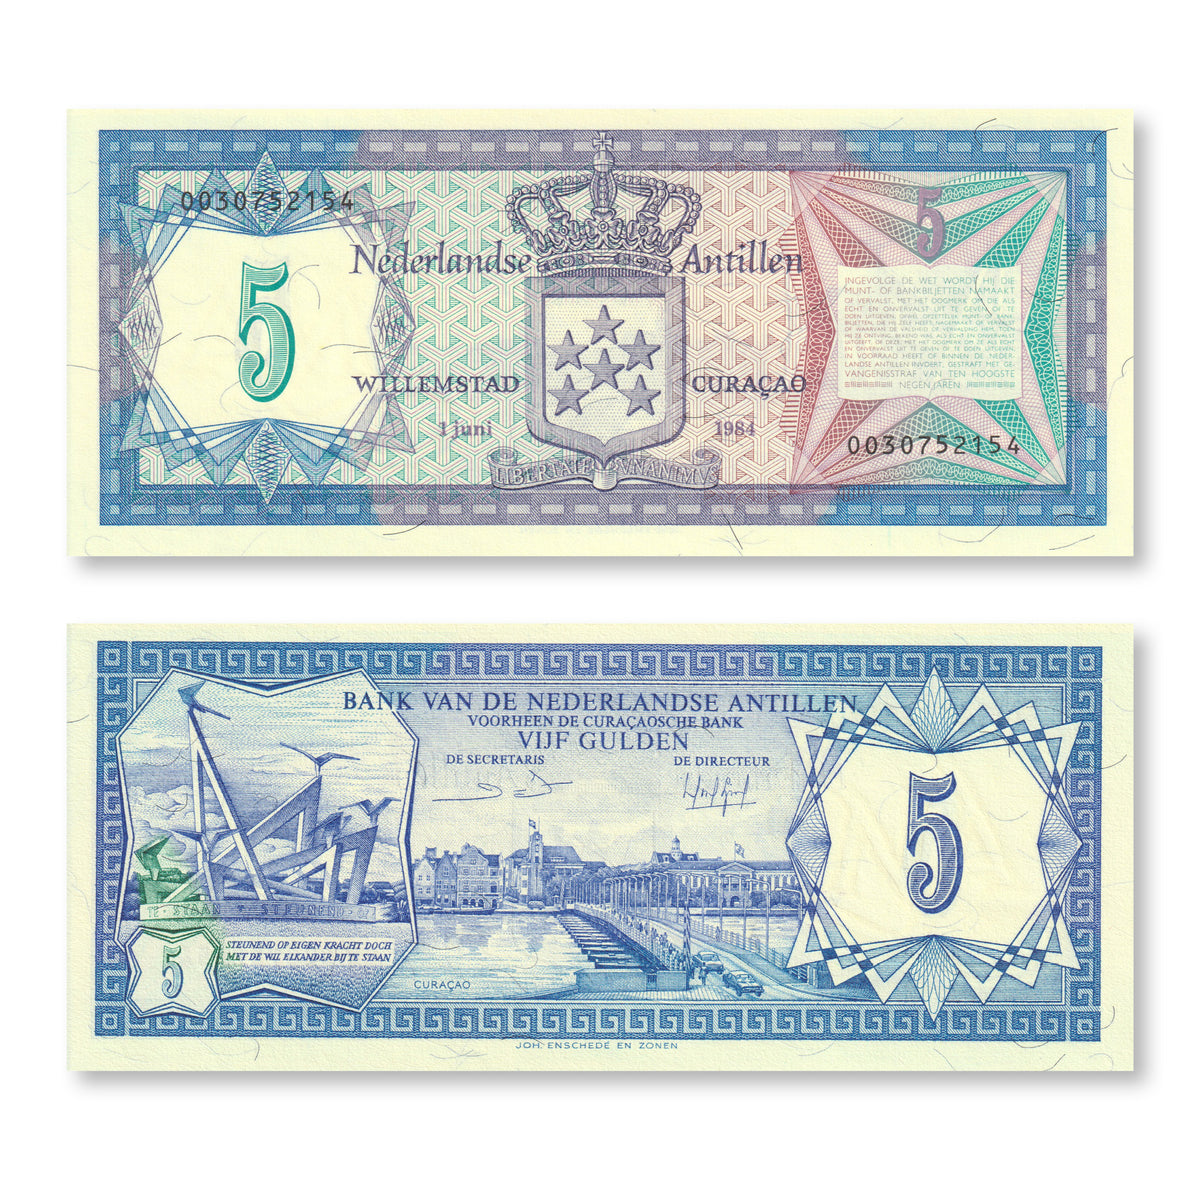 Netherlands Antilles 5 Gulden, 1984, B214b, P15b, UNC - Robert's World Money - World Banknotes